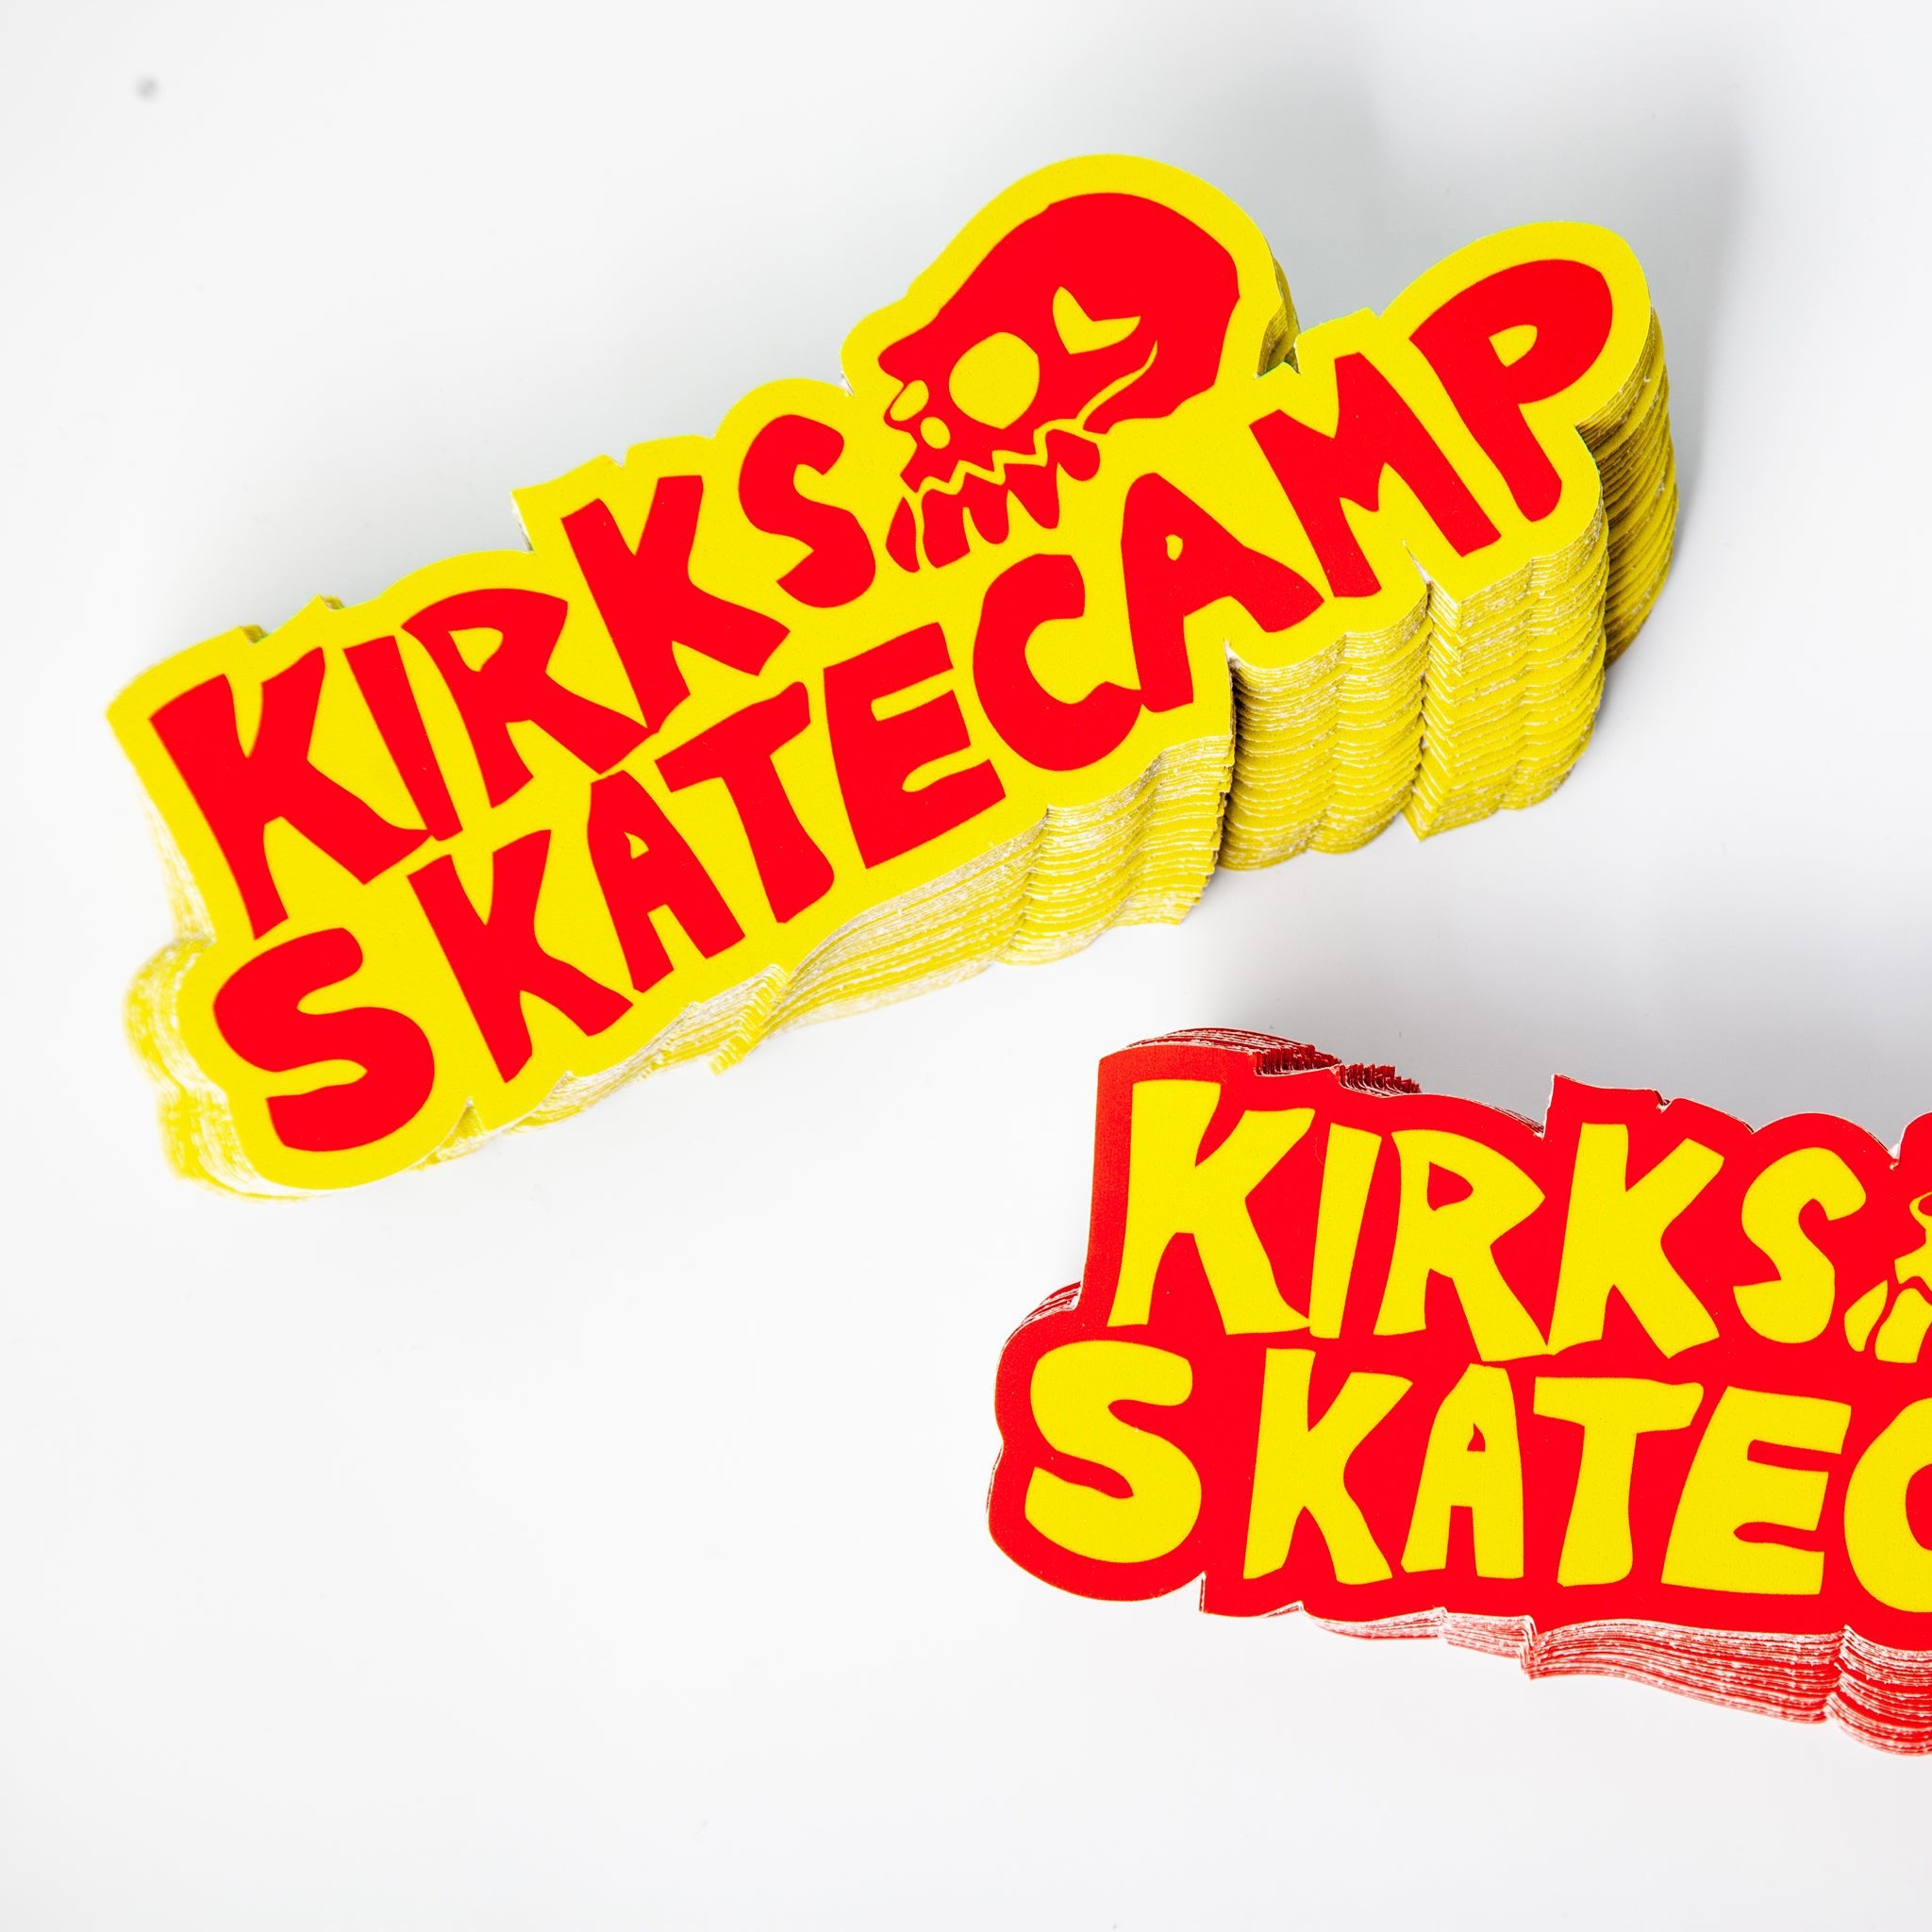 Kirks Skatecamp custom skateboard stickers